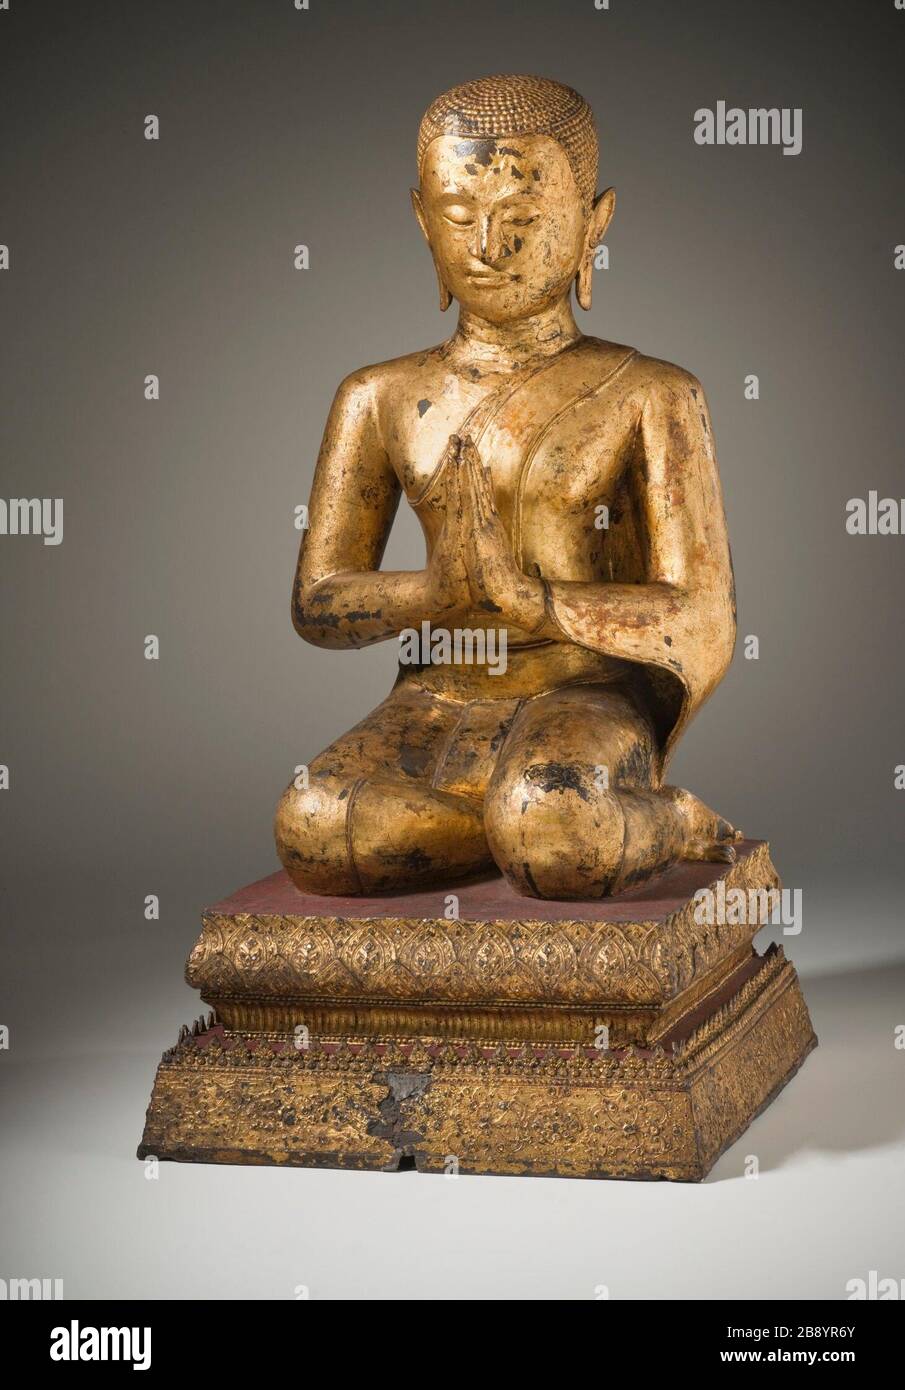 "Monk Devotee (Bild 1 von 2); Englisch: Thailand, Bangkok Periode, 19. Jahrhundert Skulptur vergoldete Kupferlegierung 30 1/4 x 15 3/8 x 20 in. (76.84 x 39.05 x 50.8 cm) Geschenk von Doris Duke's Südostasiatische Kunst Sammlung (M. 2003.231.1) süd- und südostasiatischen Kunst; 19. Jahrhundert QS: P 571, +1850-00-00 T00:00:00Z/7;". Stockfoto